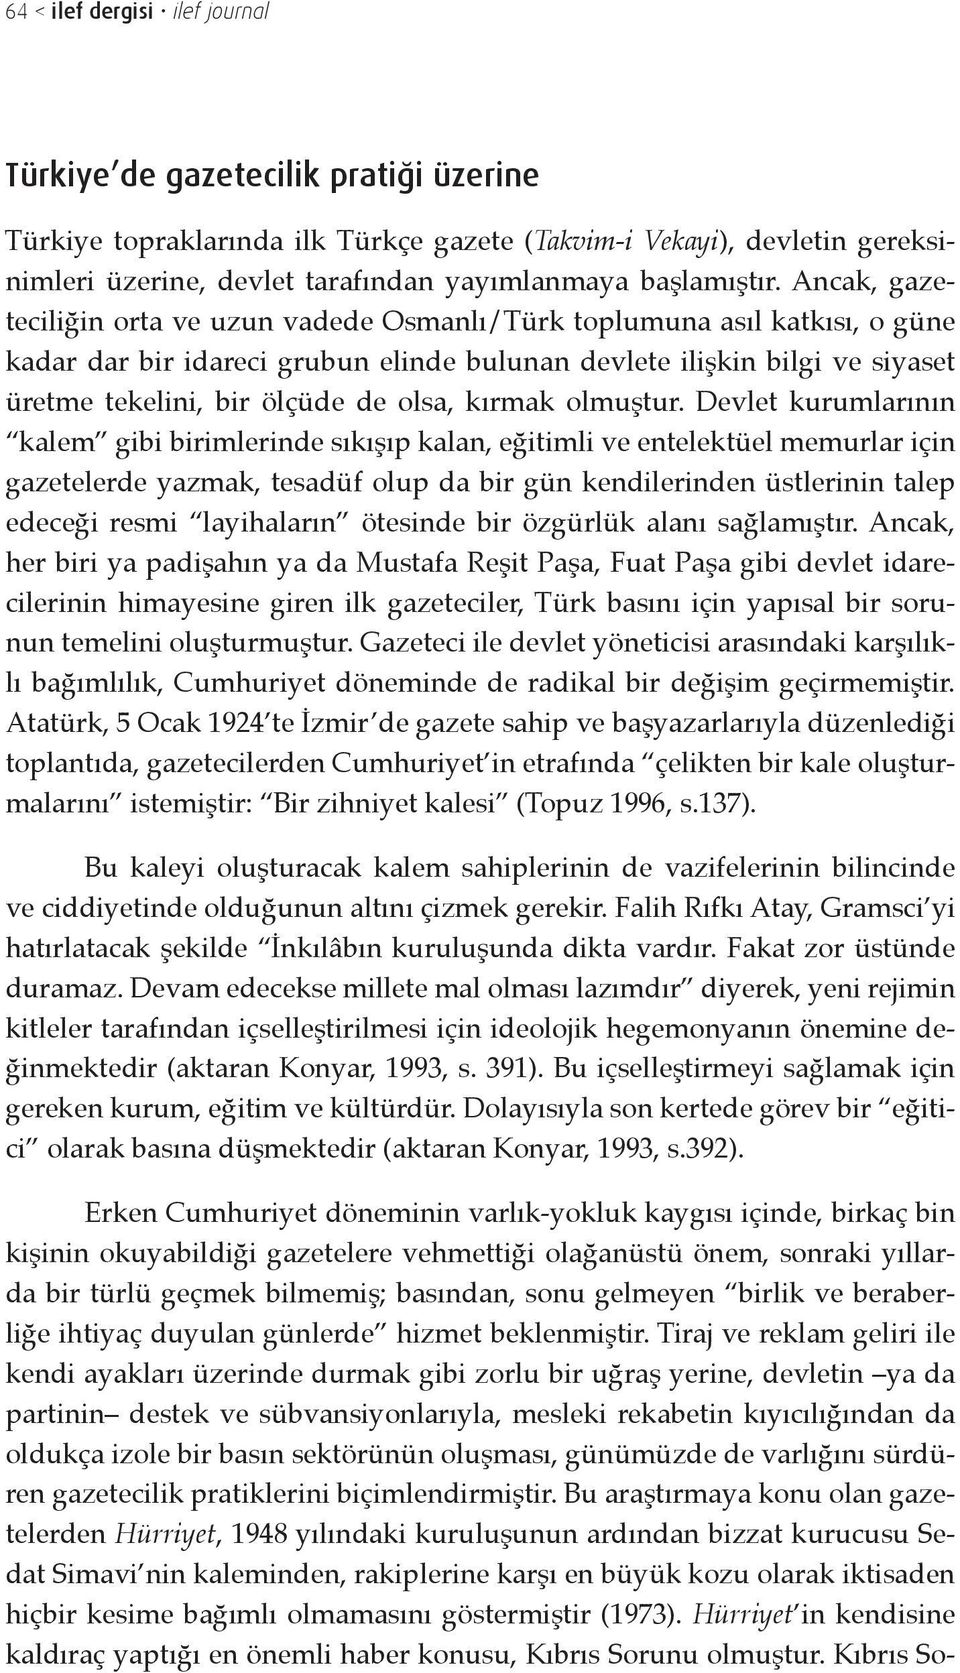 Ancak, gazeteciliğin orta ve uzun vadede Osmanlı/Türk toplumuna asıl katkısı, o güne kadar dar bir idareci grubun elinde bulunan devlete ilişkin bilgi ve siyaset üretme tekelini, bir ölçüde de olsa,